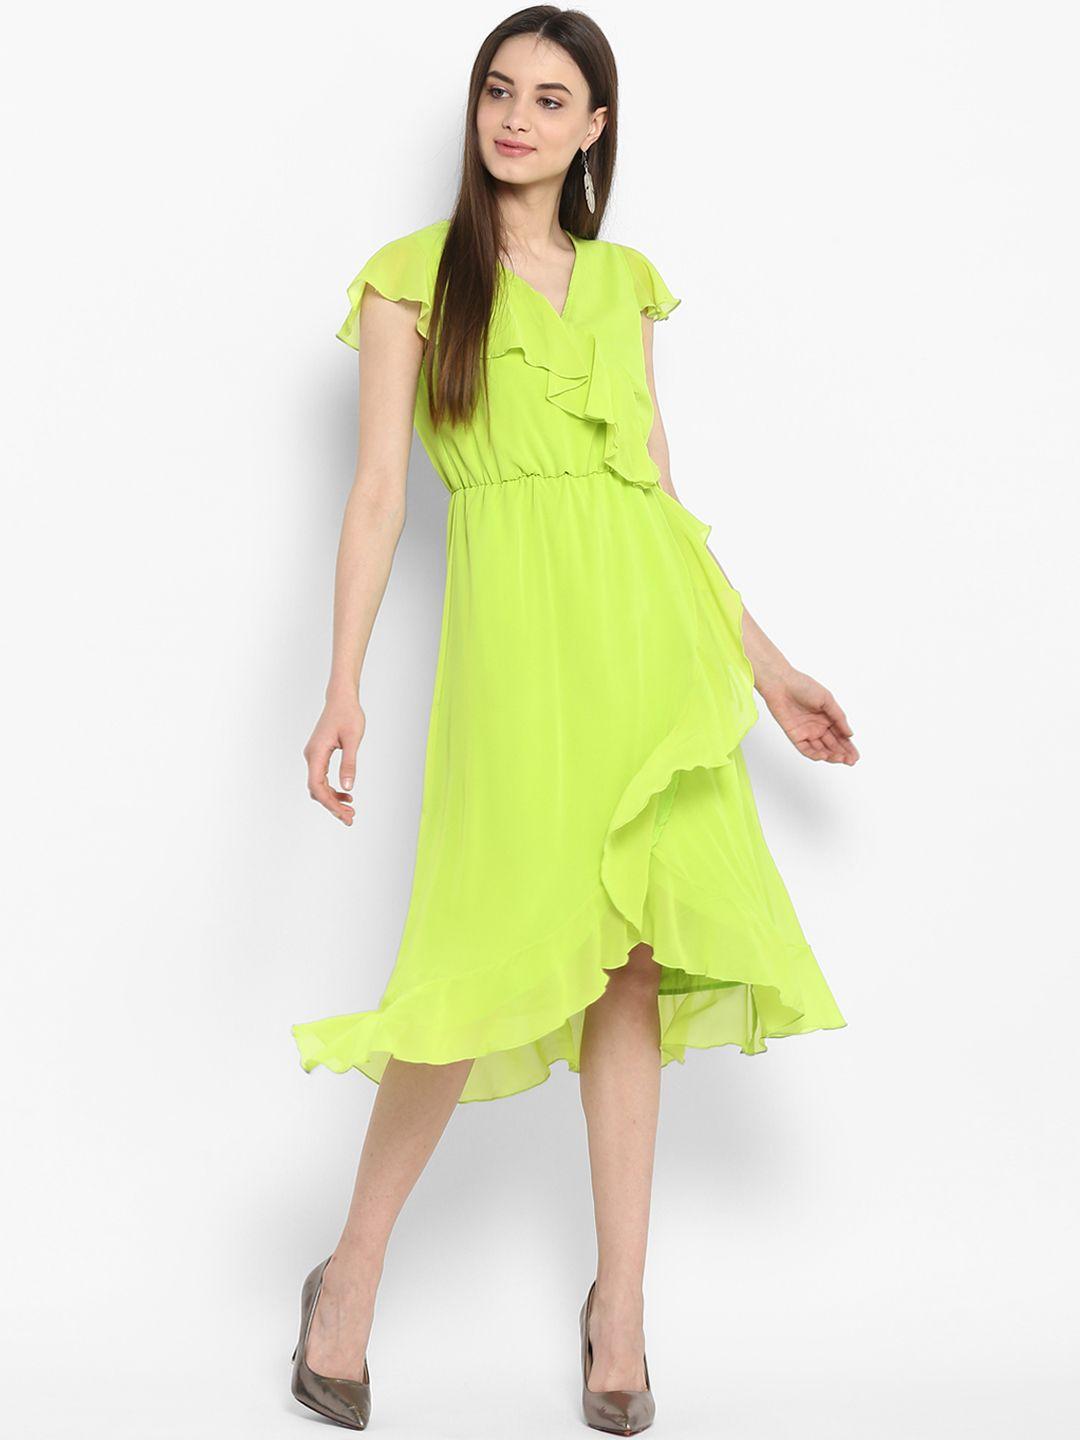 stylestone women green solid wrap dress